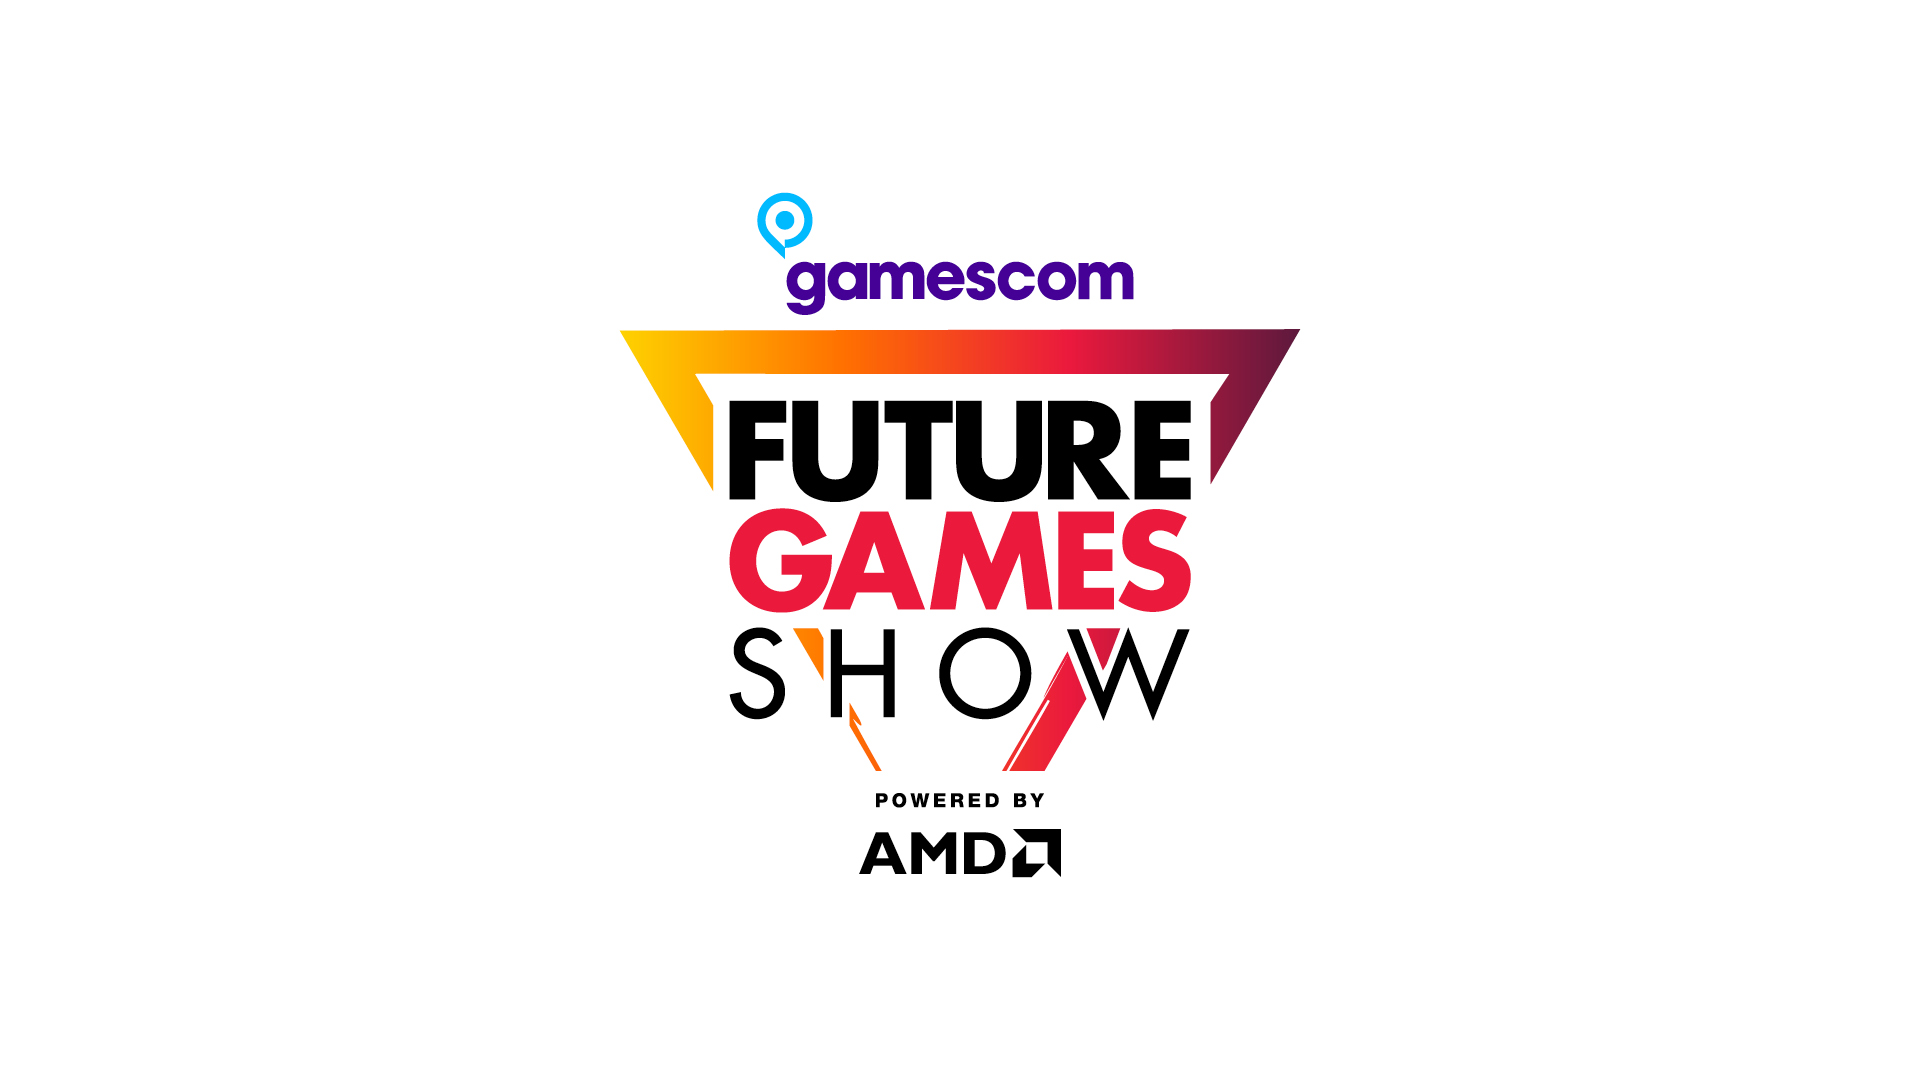 Future Games Show Gamescom